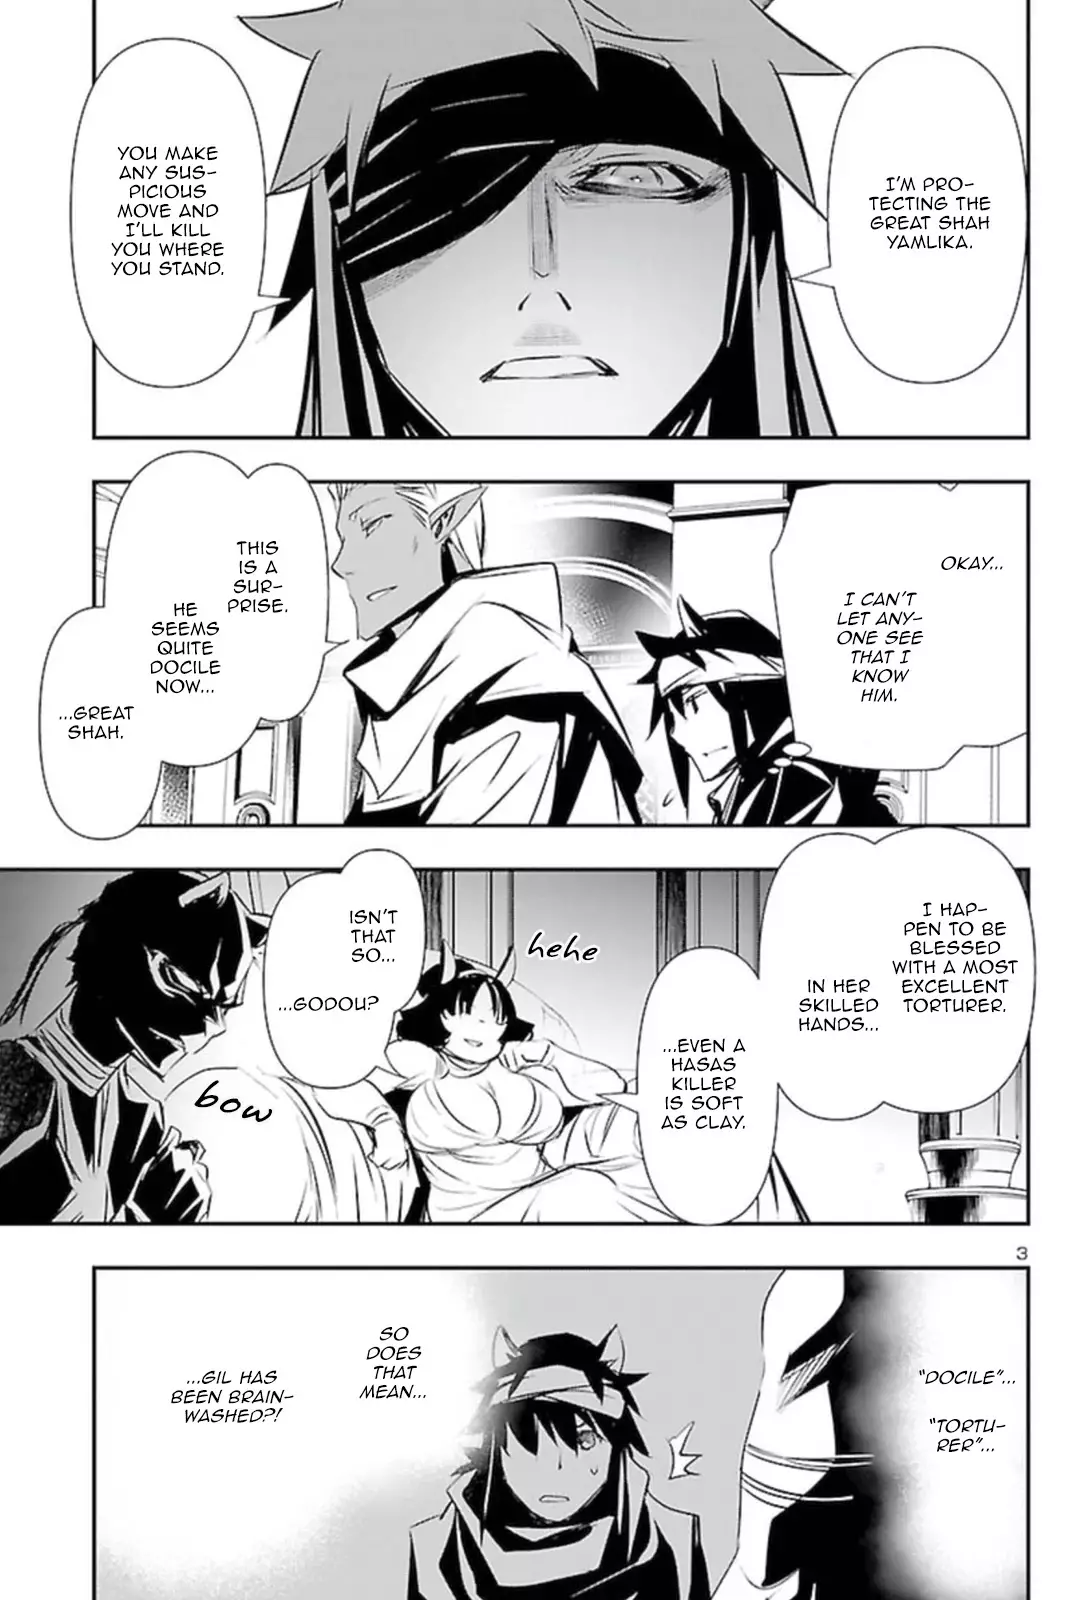 Shinju no Nectar - 58 page 2